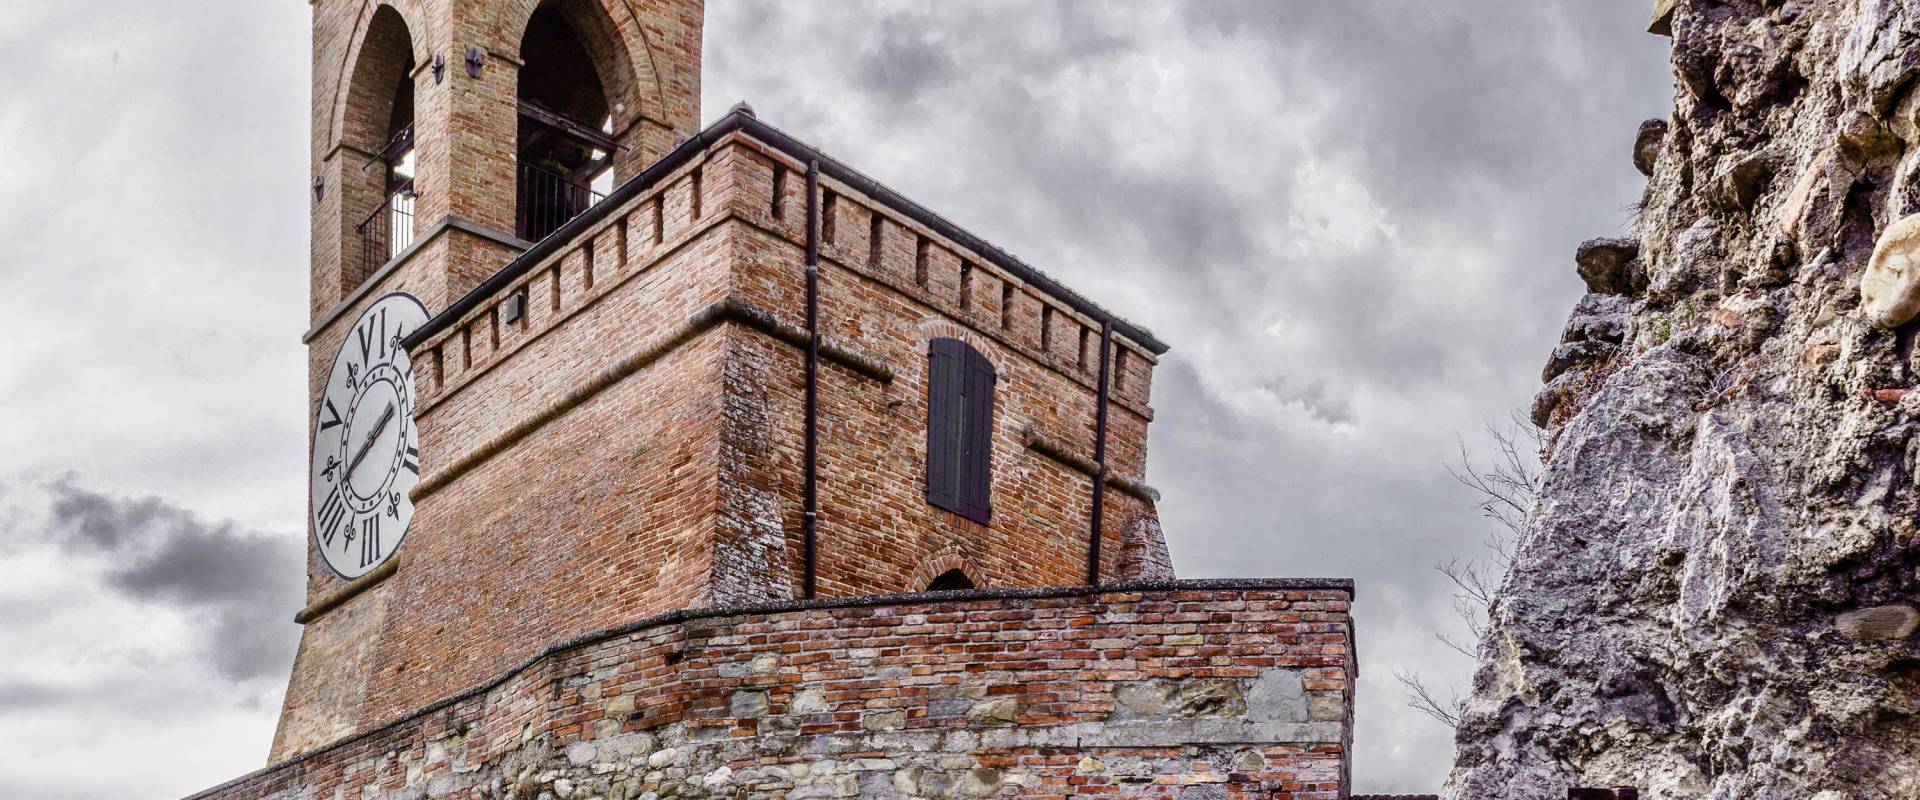 In cima alla torre dell'orologio di Brisighella foto di Vanni Lazzari